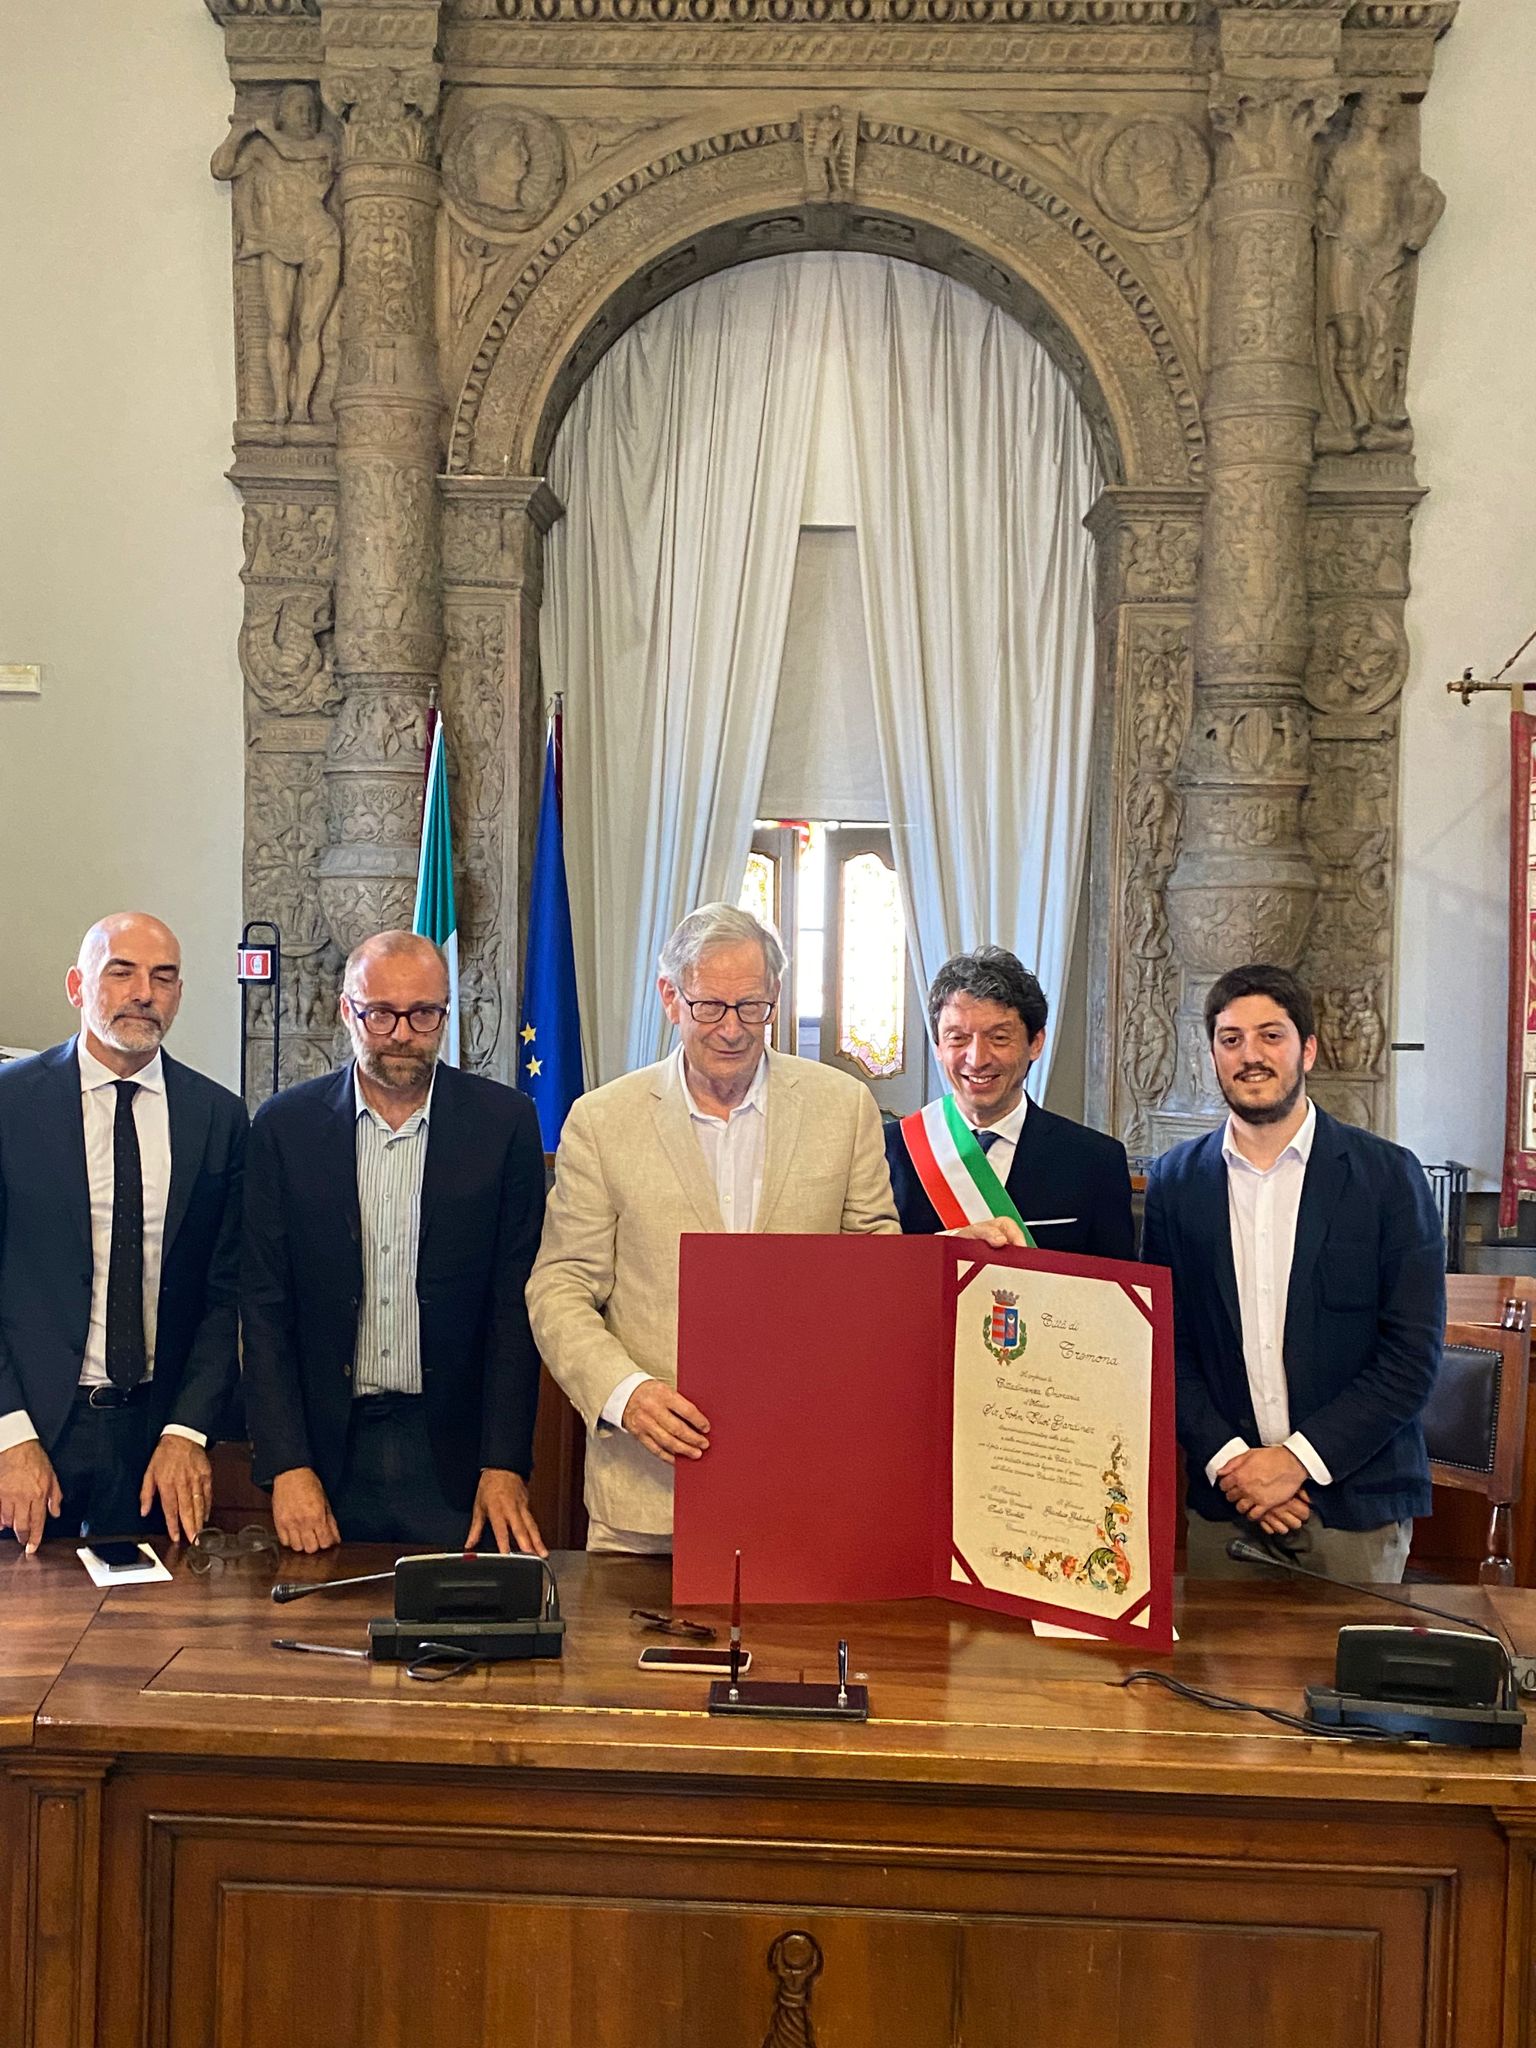 John Eliot Gardiner named Honorary Citizen of Cremona